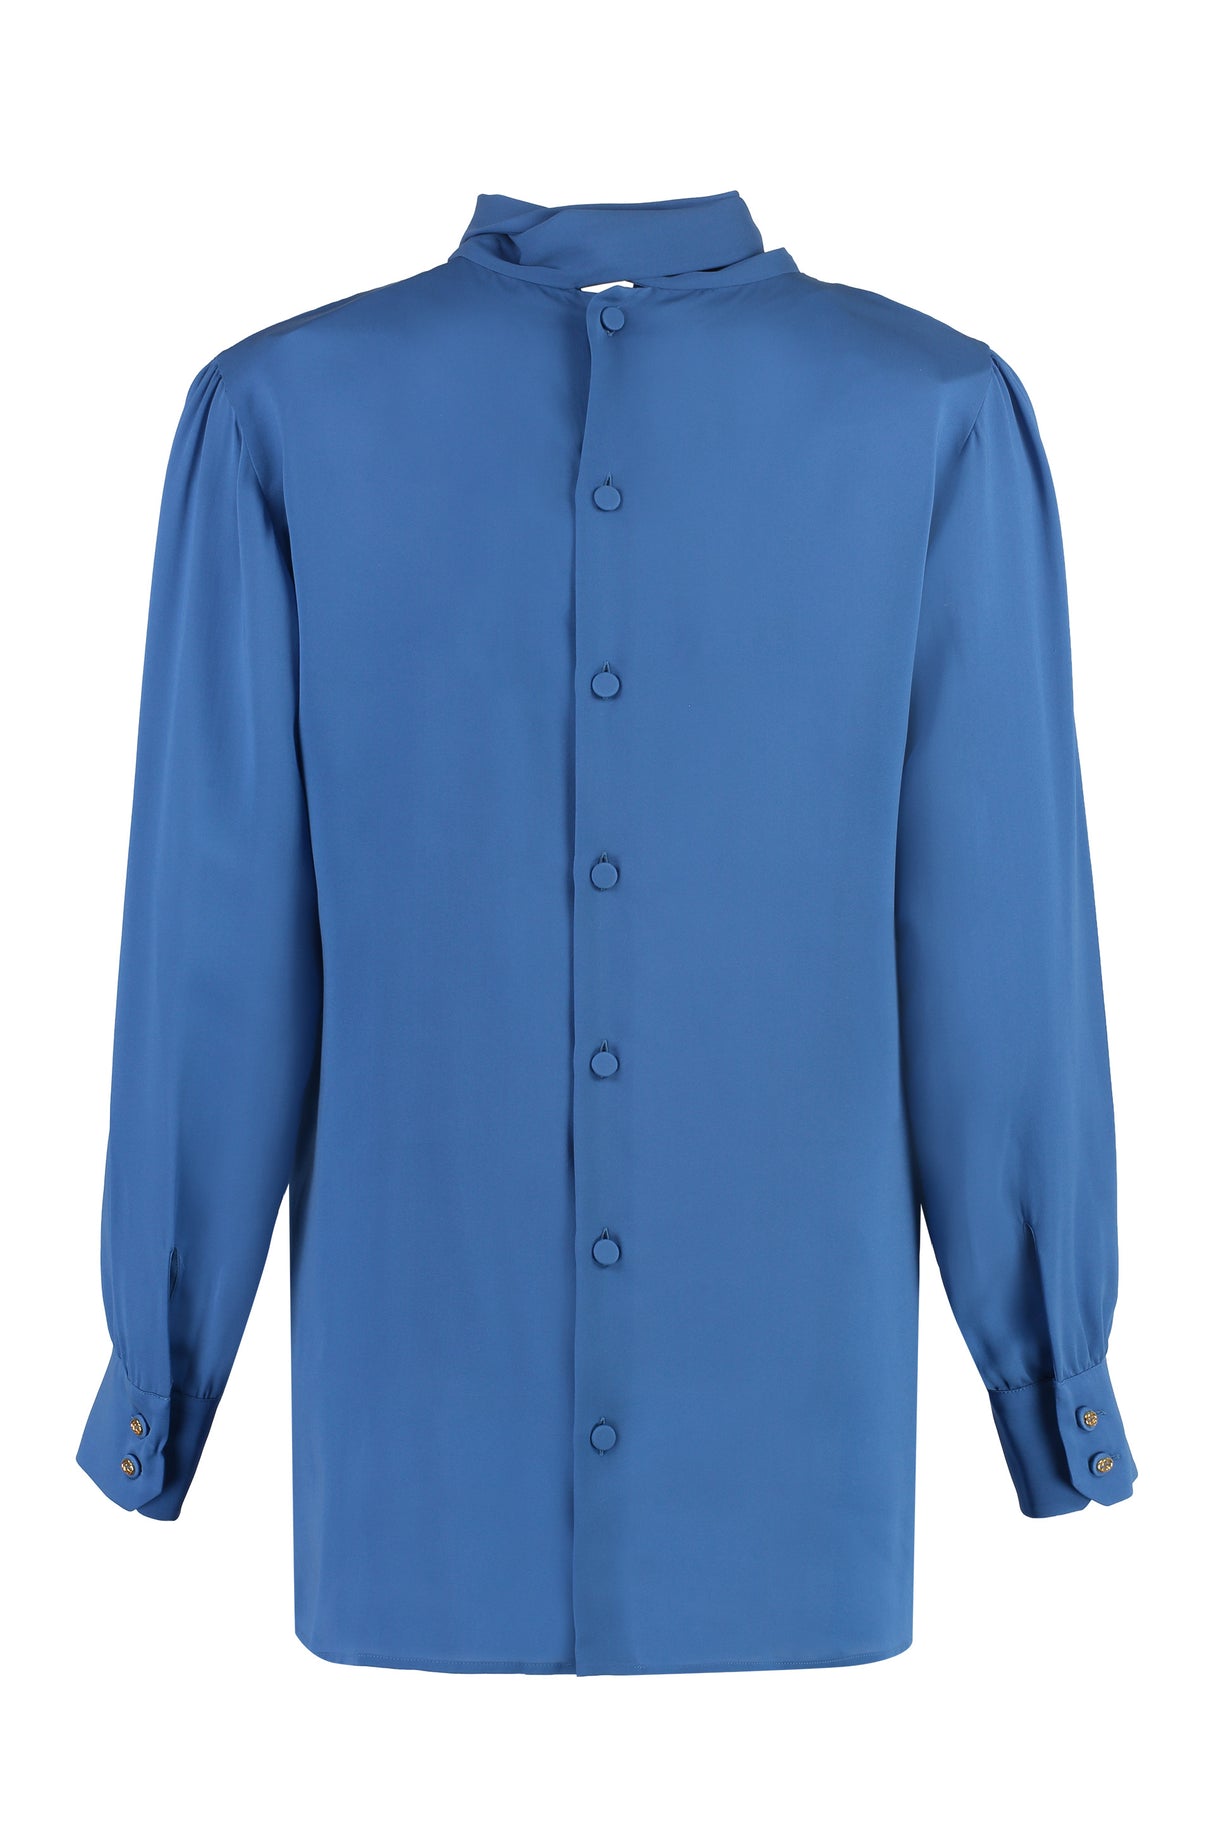 蓝色女性领系带格鲁吉亚式衬衫带有标识细节按钮